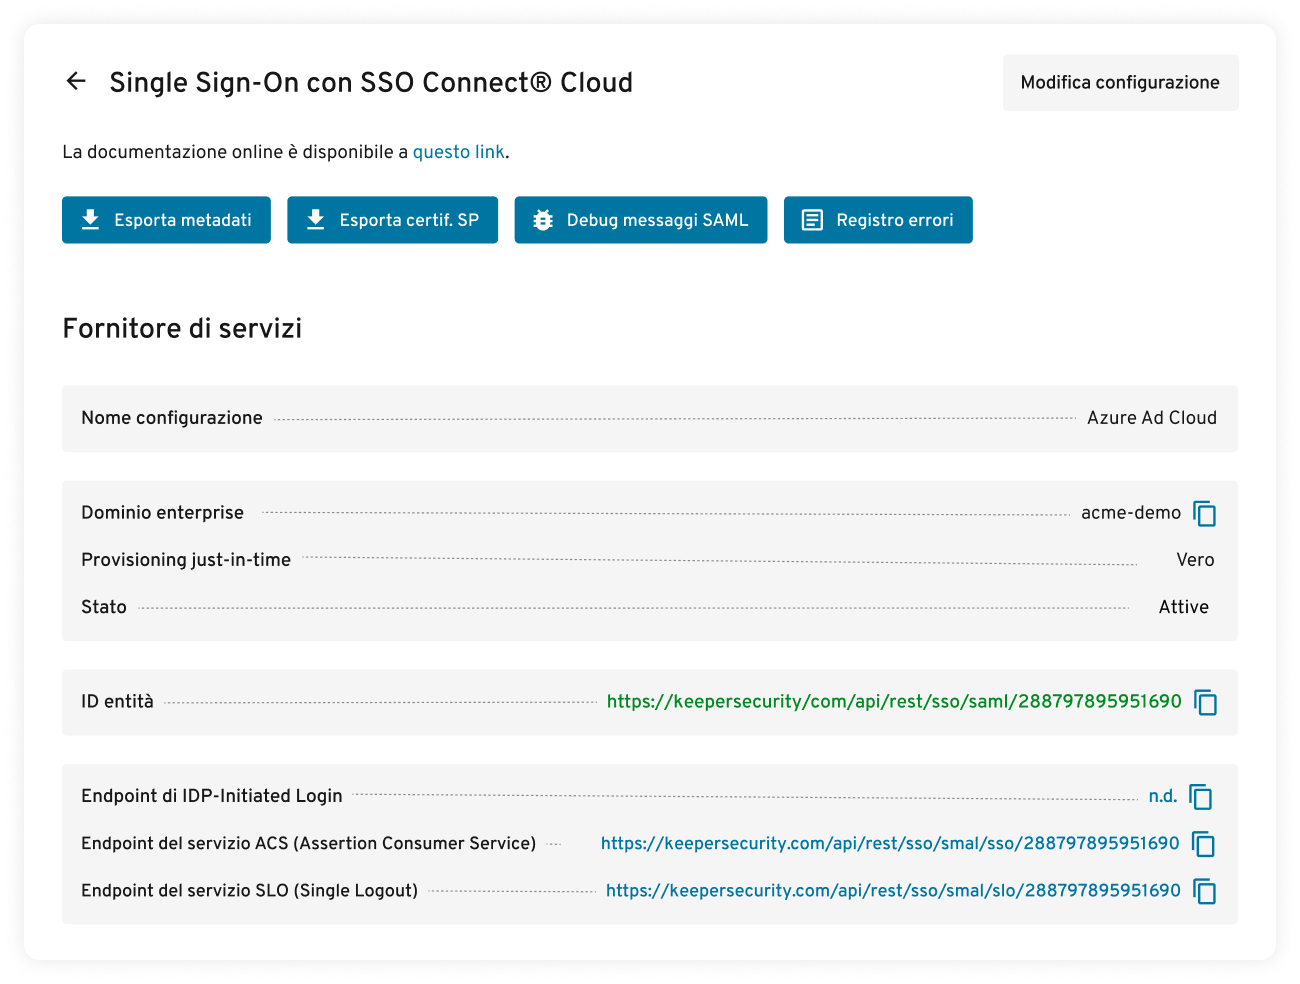 Autenticazione SAML 2.0 con SSO Connect Cloud